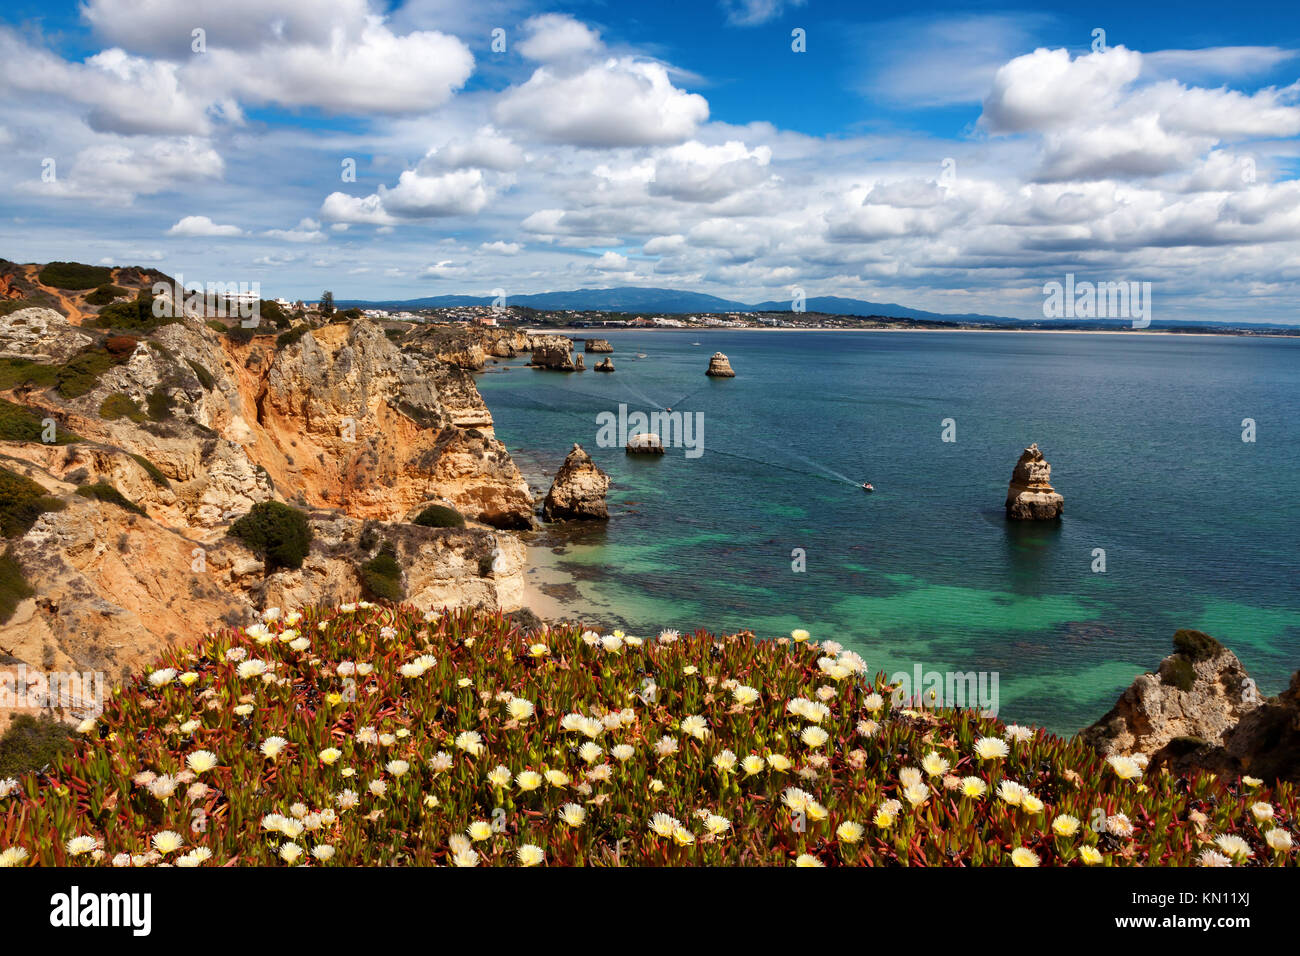 Splendida vista sulla costa di Algarve vicino alla spiaggia Praia do Camilo, Portogallo Foto Stock